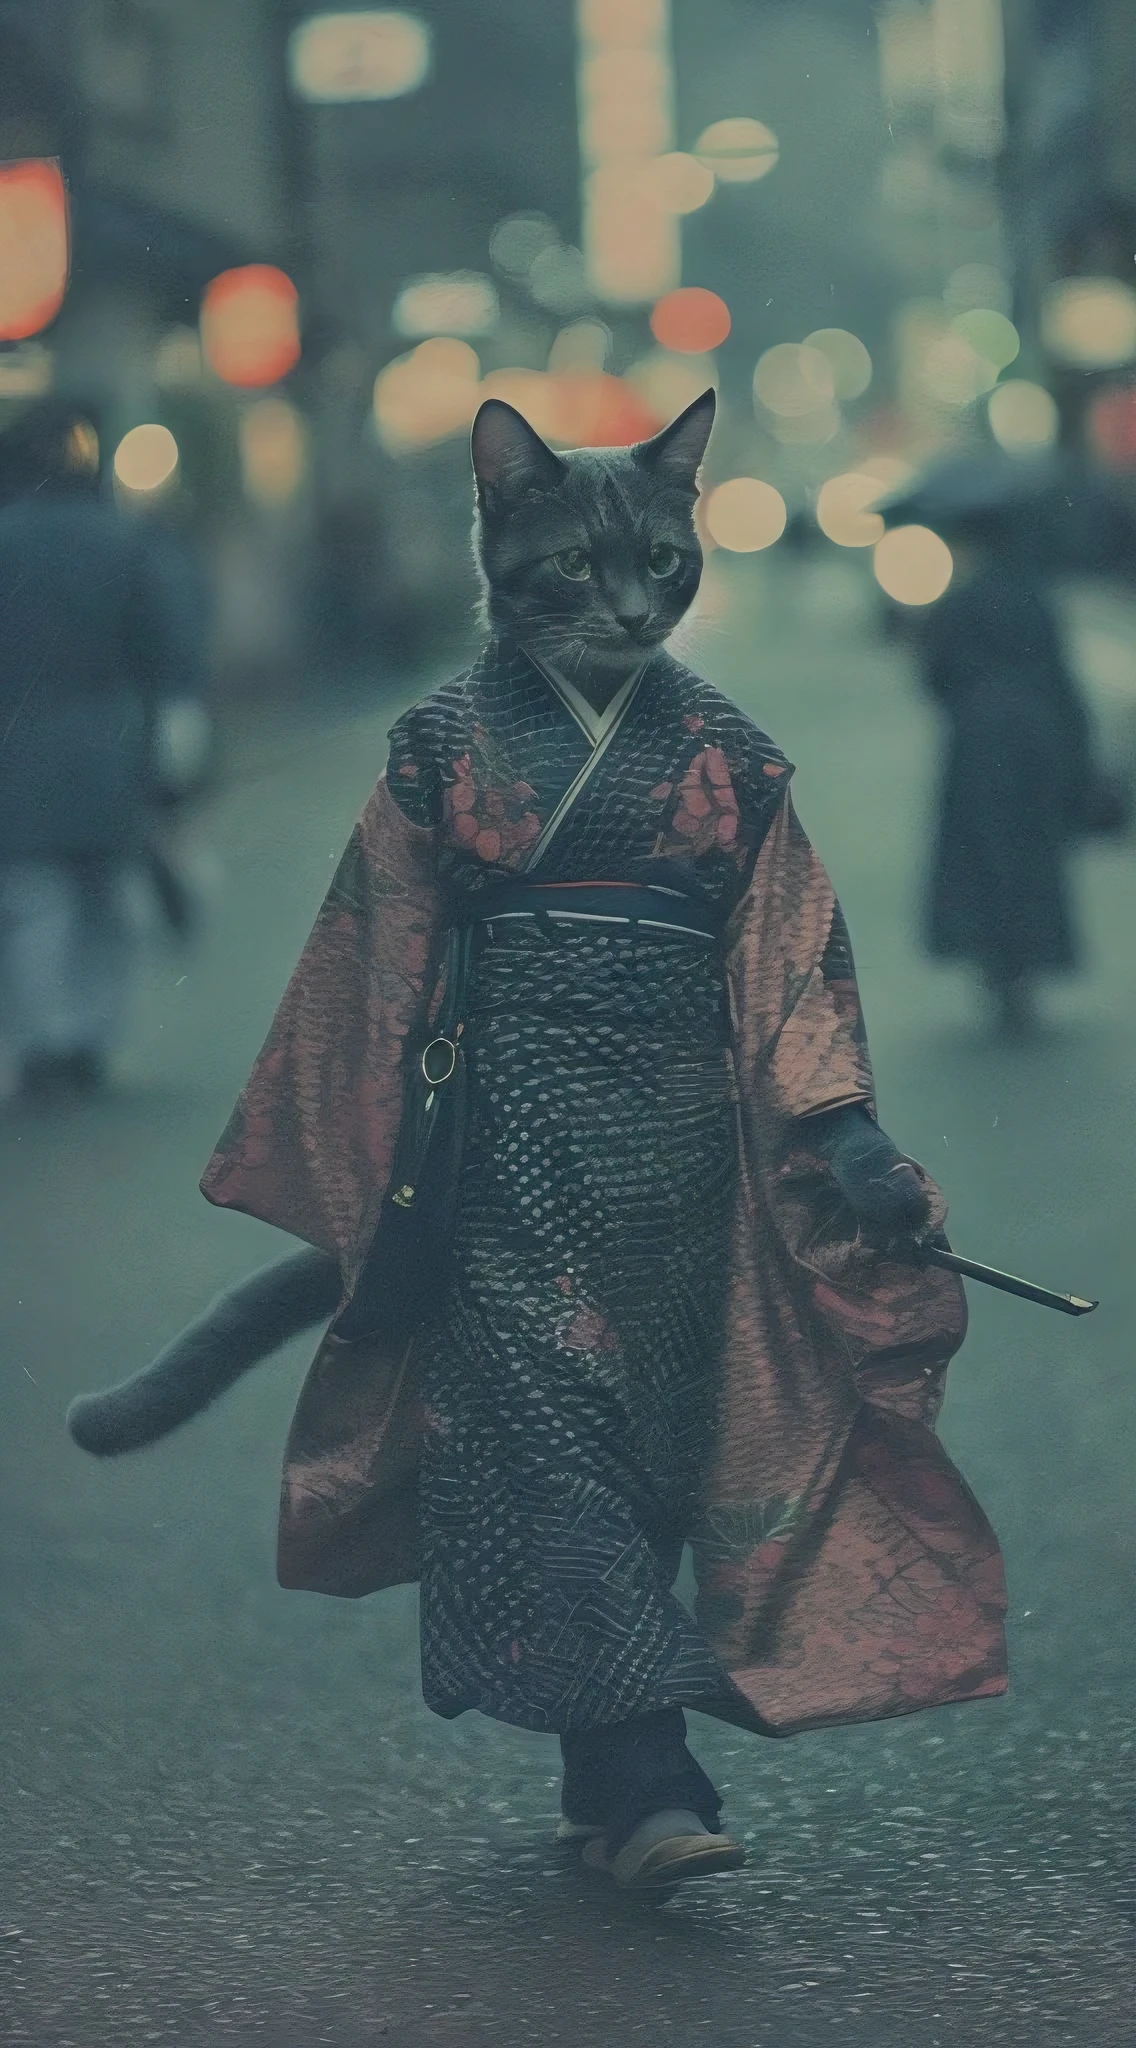 穿着美丽和服的人形猫, 走在京都的街道上, 模拟照片, 复杂的细节, 电影灯光, 柔和的色调, 胶片颗粒, 景深, 高质量, 杰作